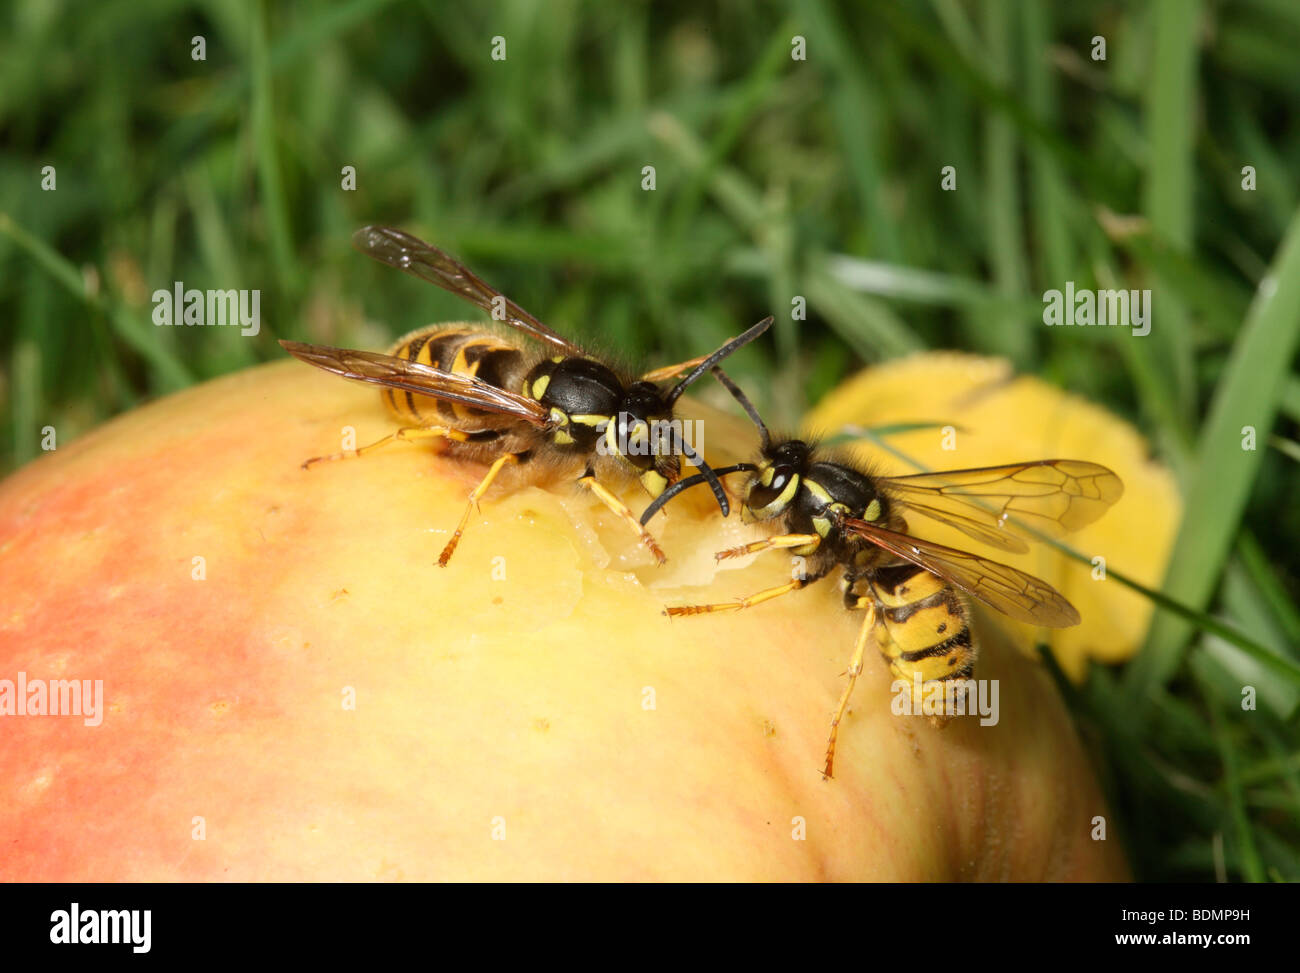 Wasp, Vespula vulgaris, on apple, Midlands, August 2009 Stock Photo